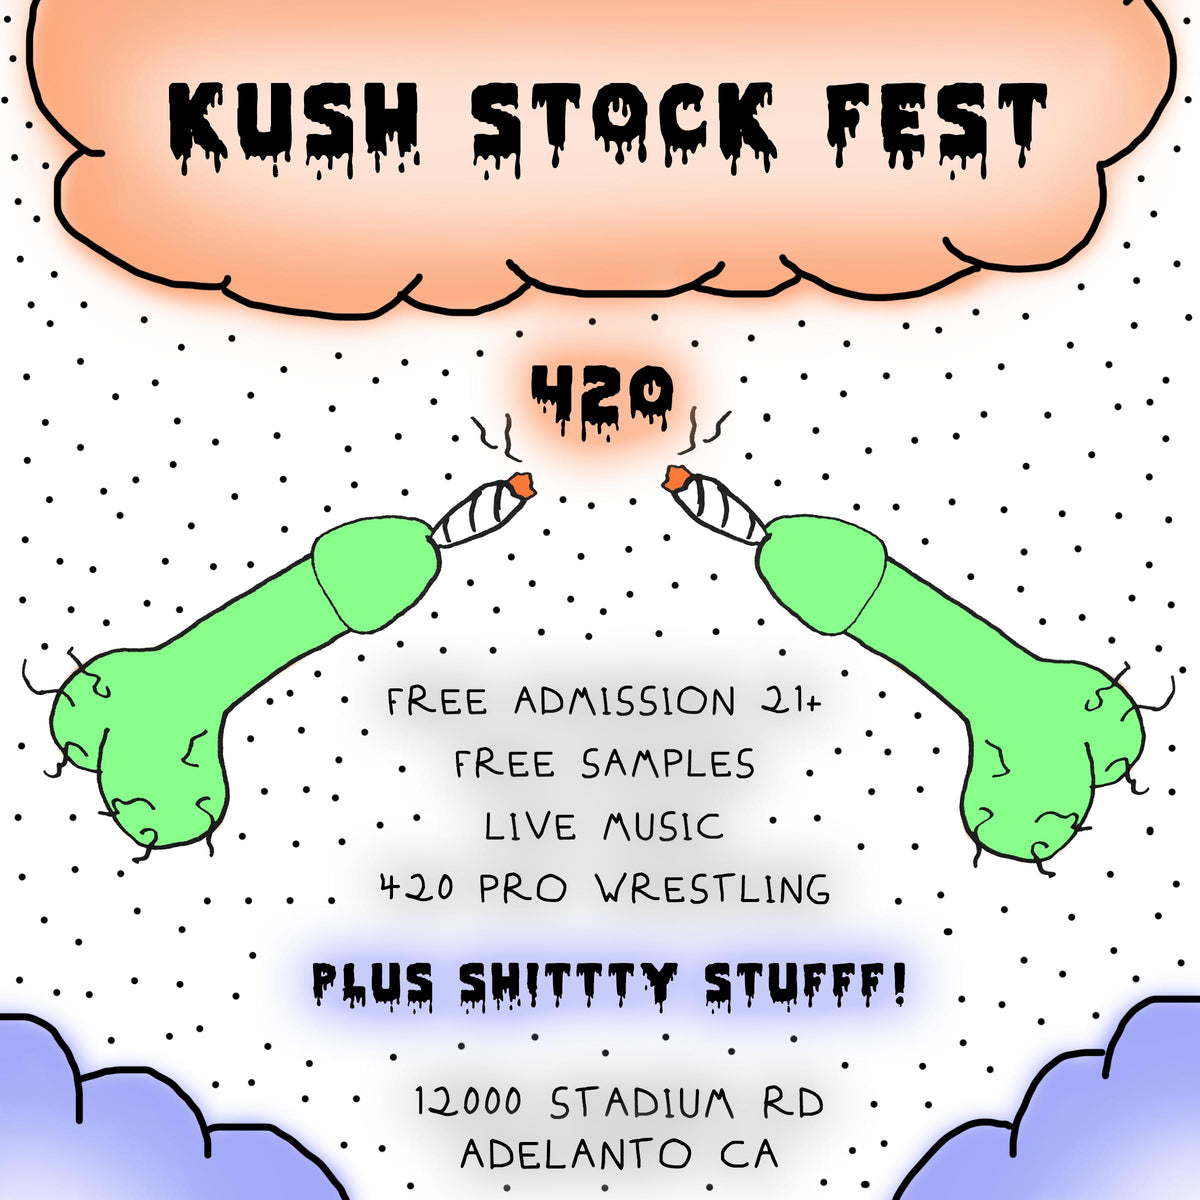 APRIL 20, 2019 // KUSH STOCK FEST